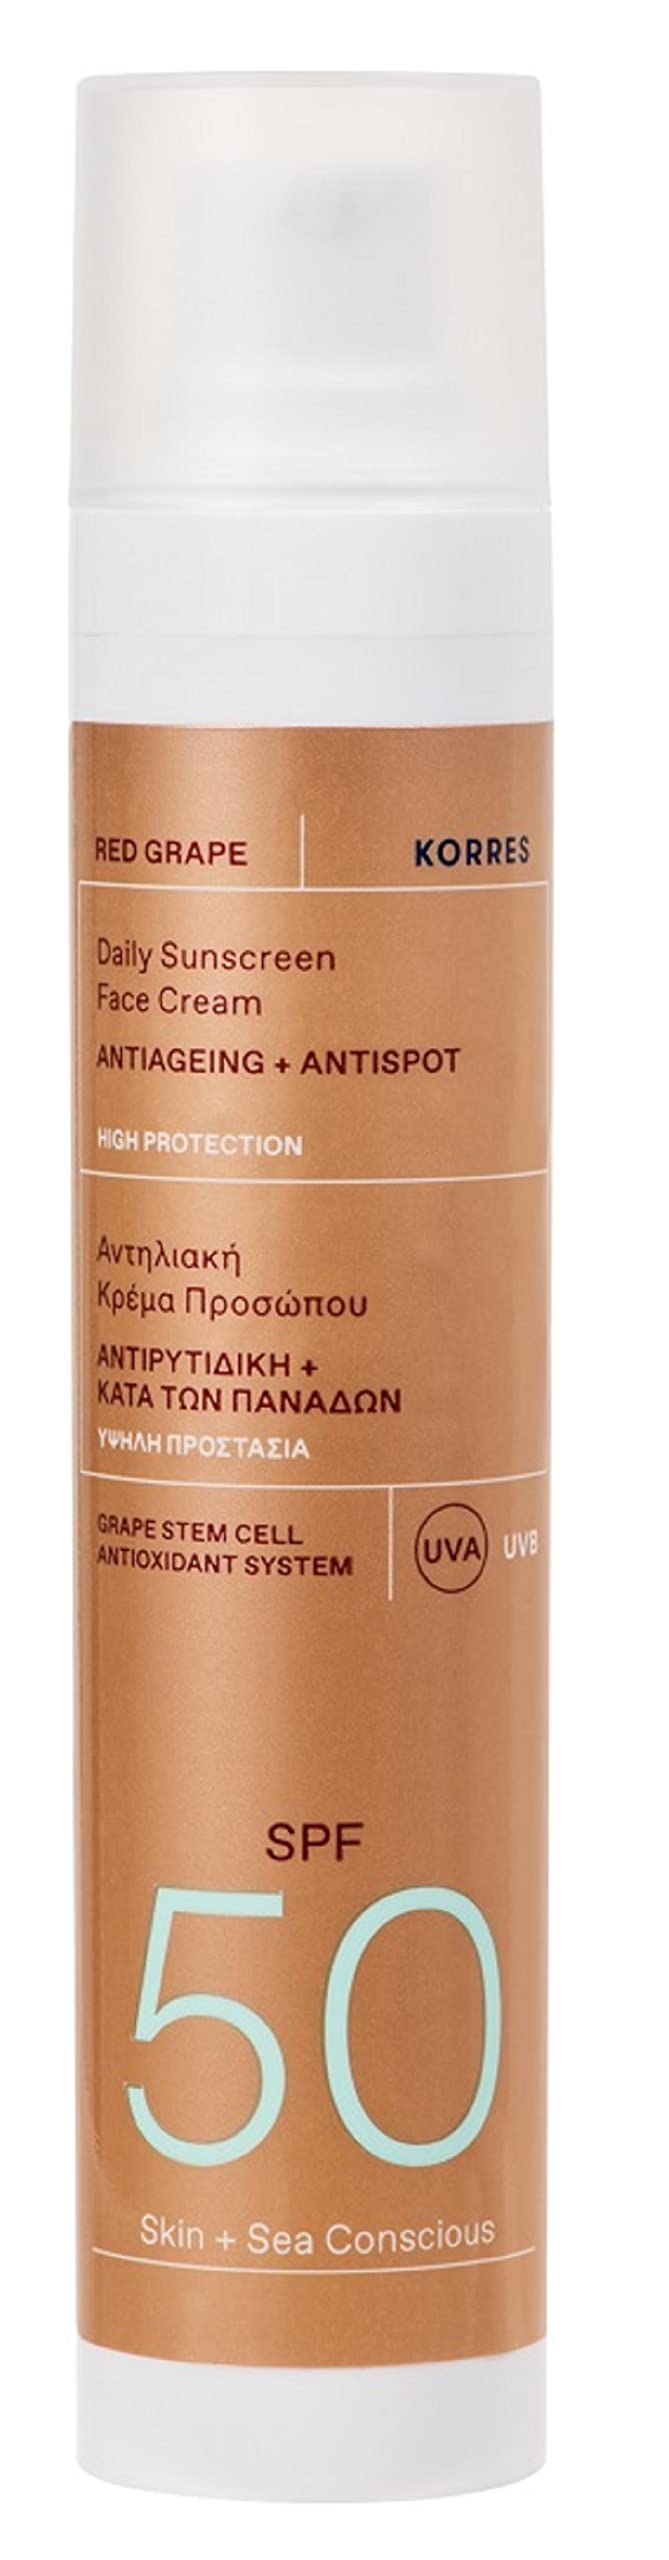 KORRES RED GRAPE Sonnencreme fürs Gesicht, LSF 50, dermatologisch getestet, mit Anti-Aging Wirkung, 50 ml